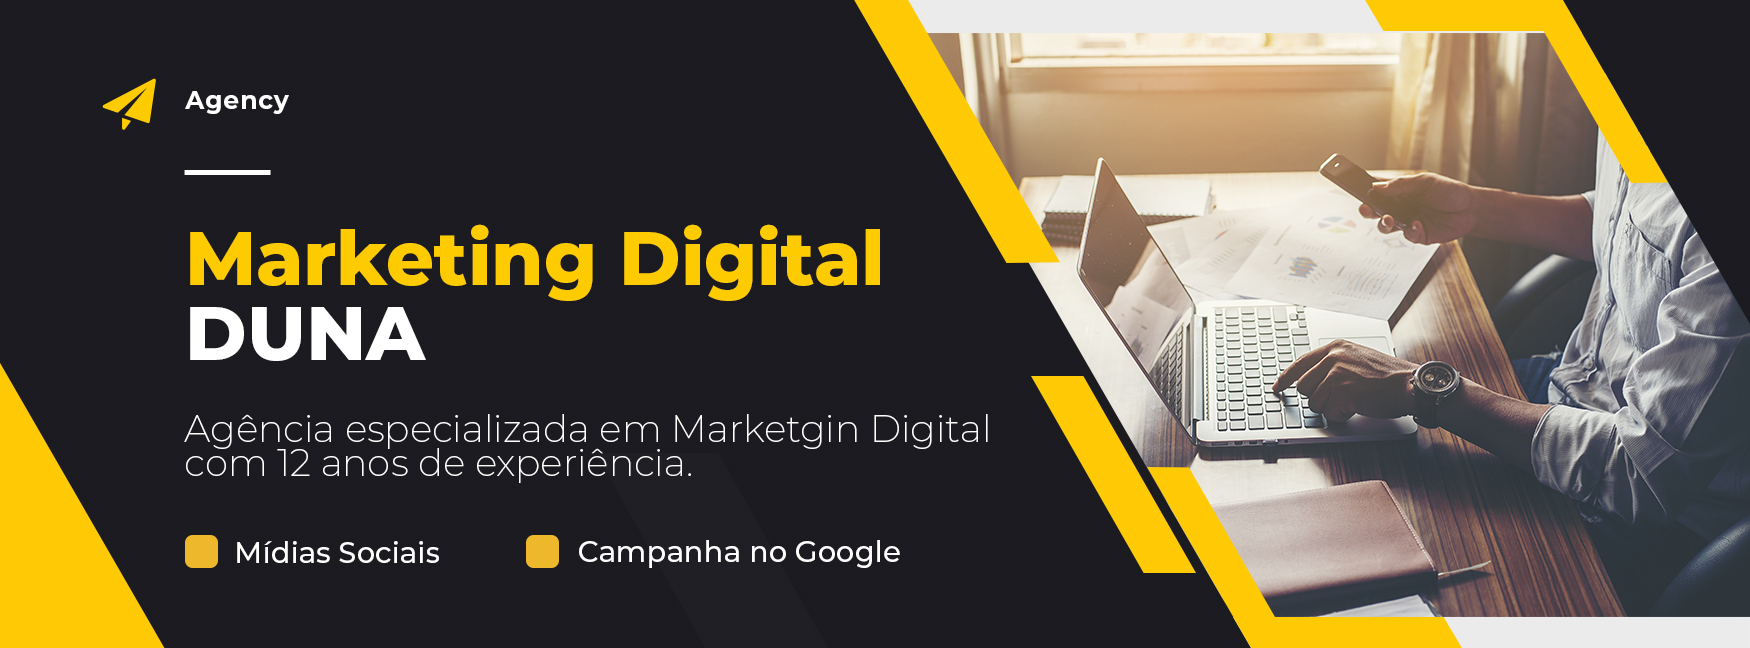 agencia de marketing digital em portugal preços